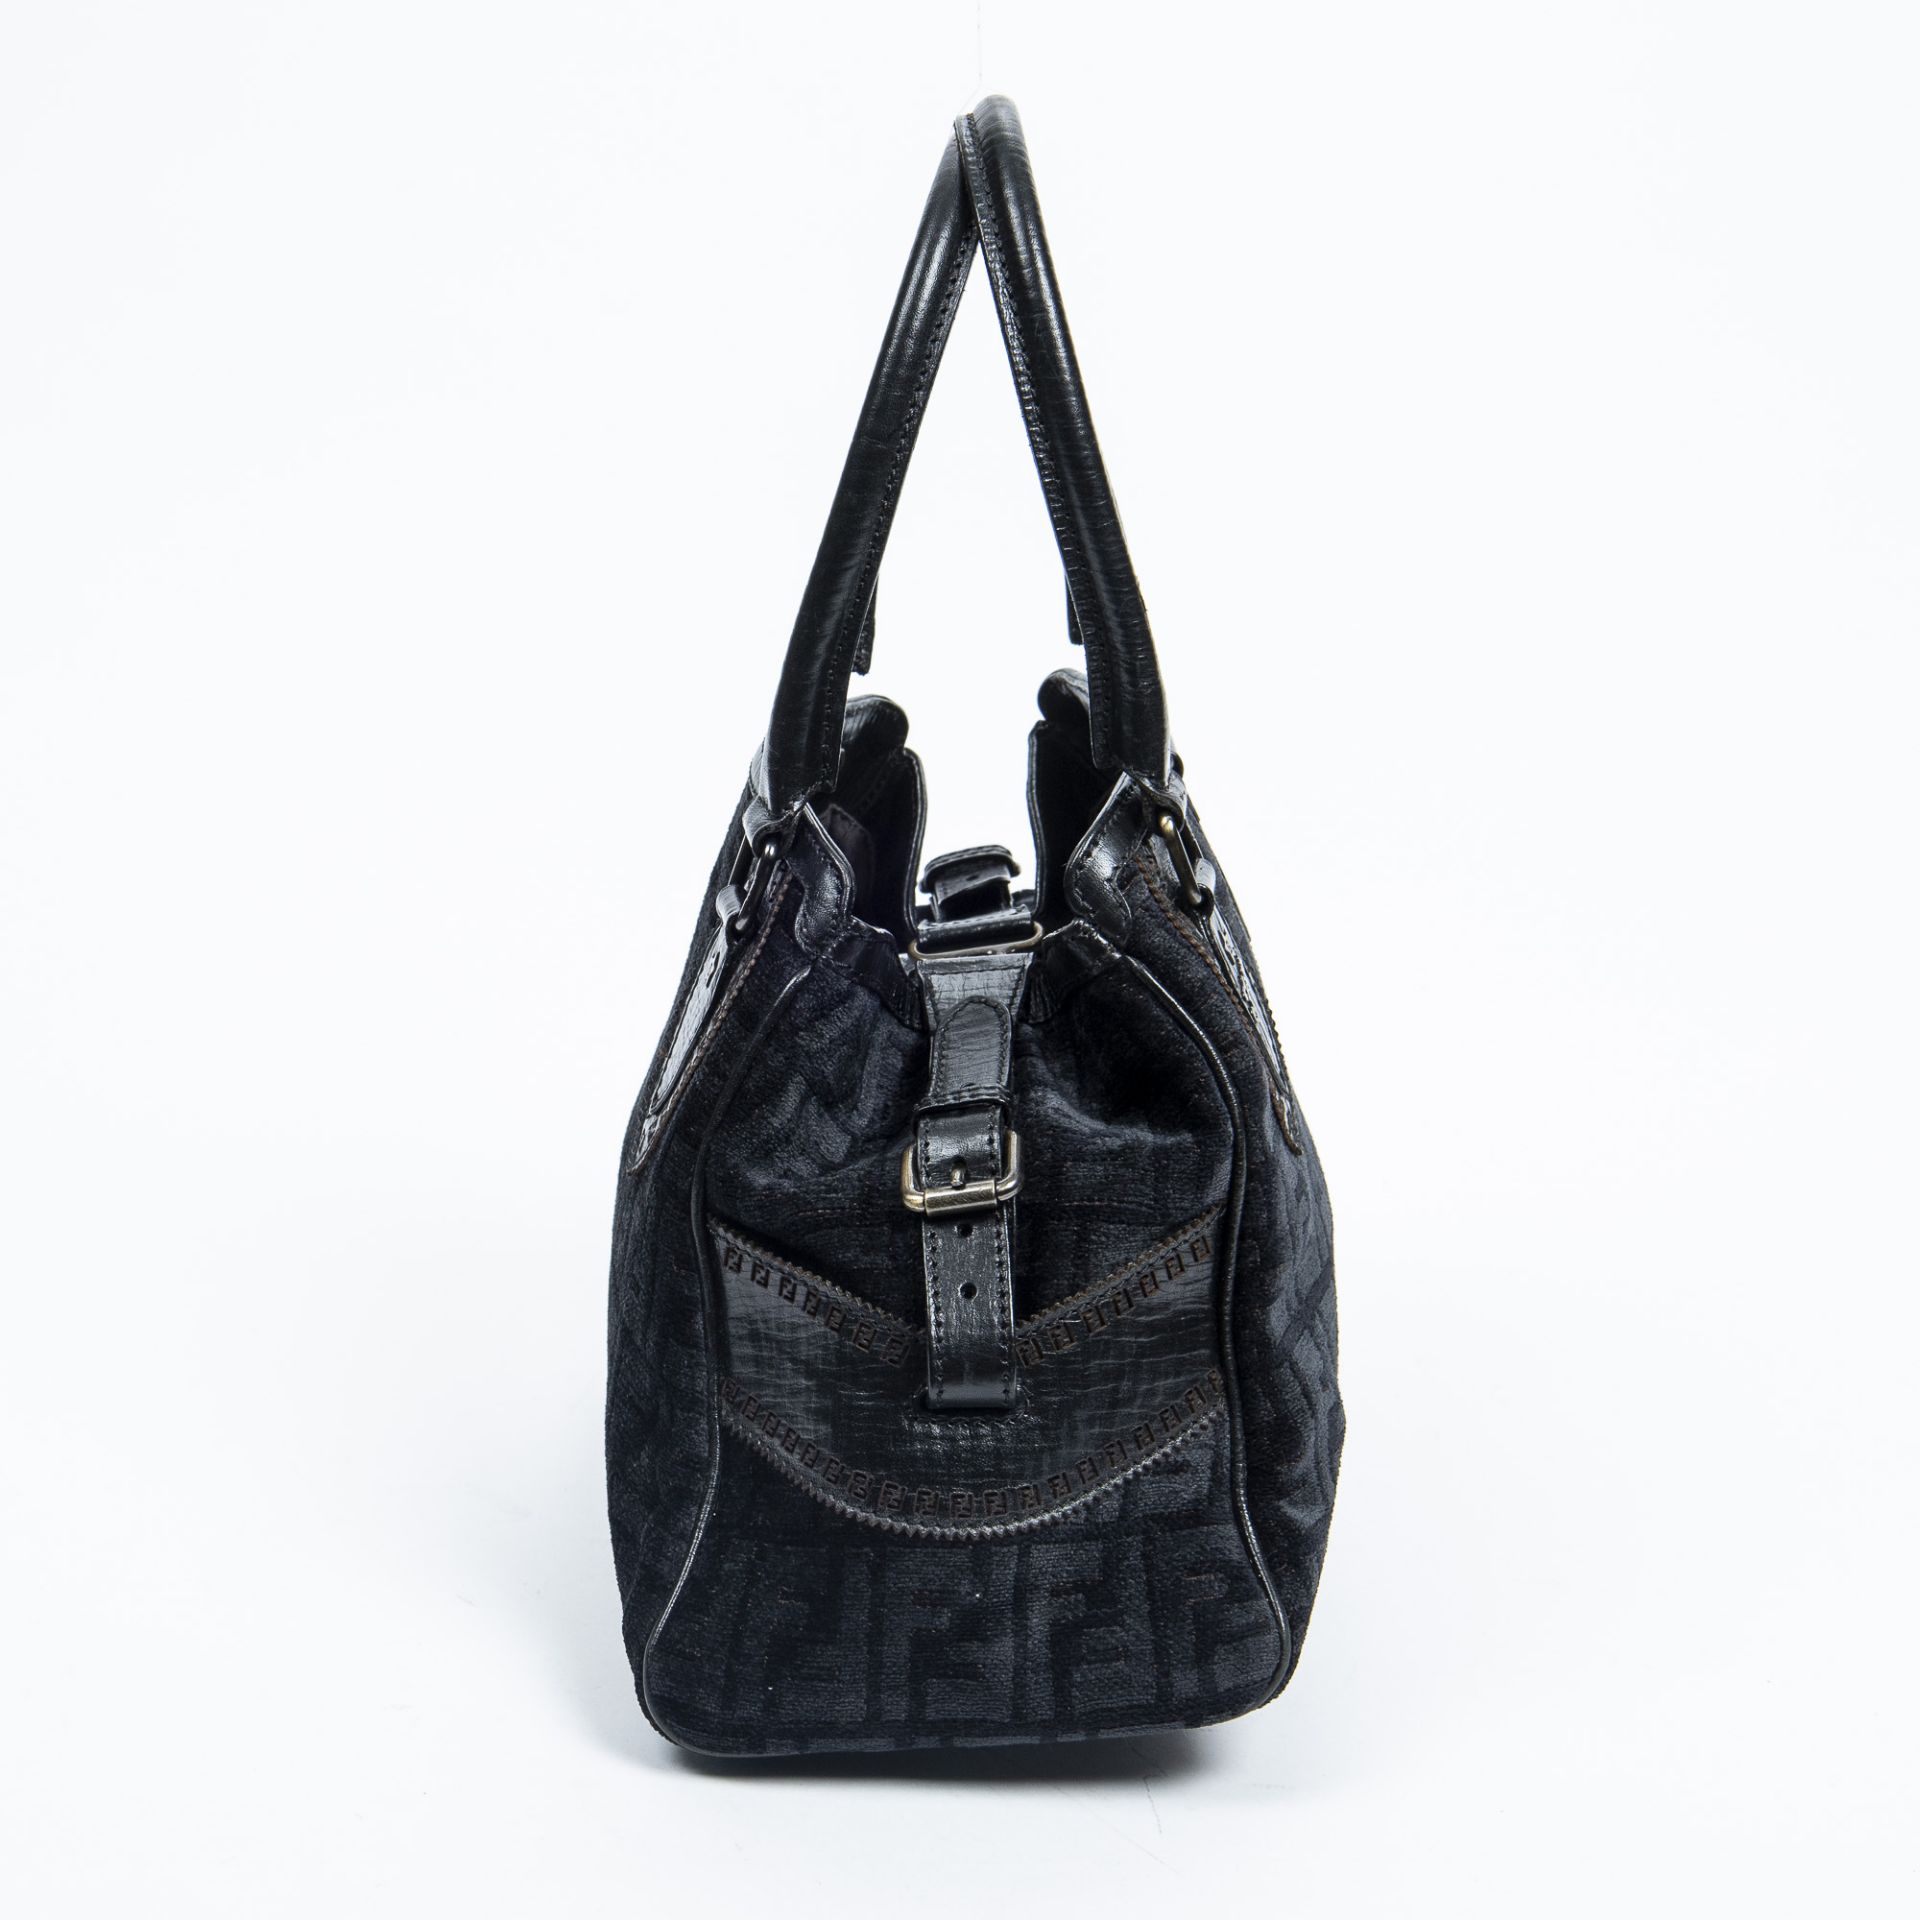 RRP £945.00 Lot To Contain 1 Fendi Canvas Du Jour Bag Handbag In Black - 31*23*13cm - A - - Image 4 of 4